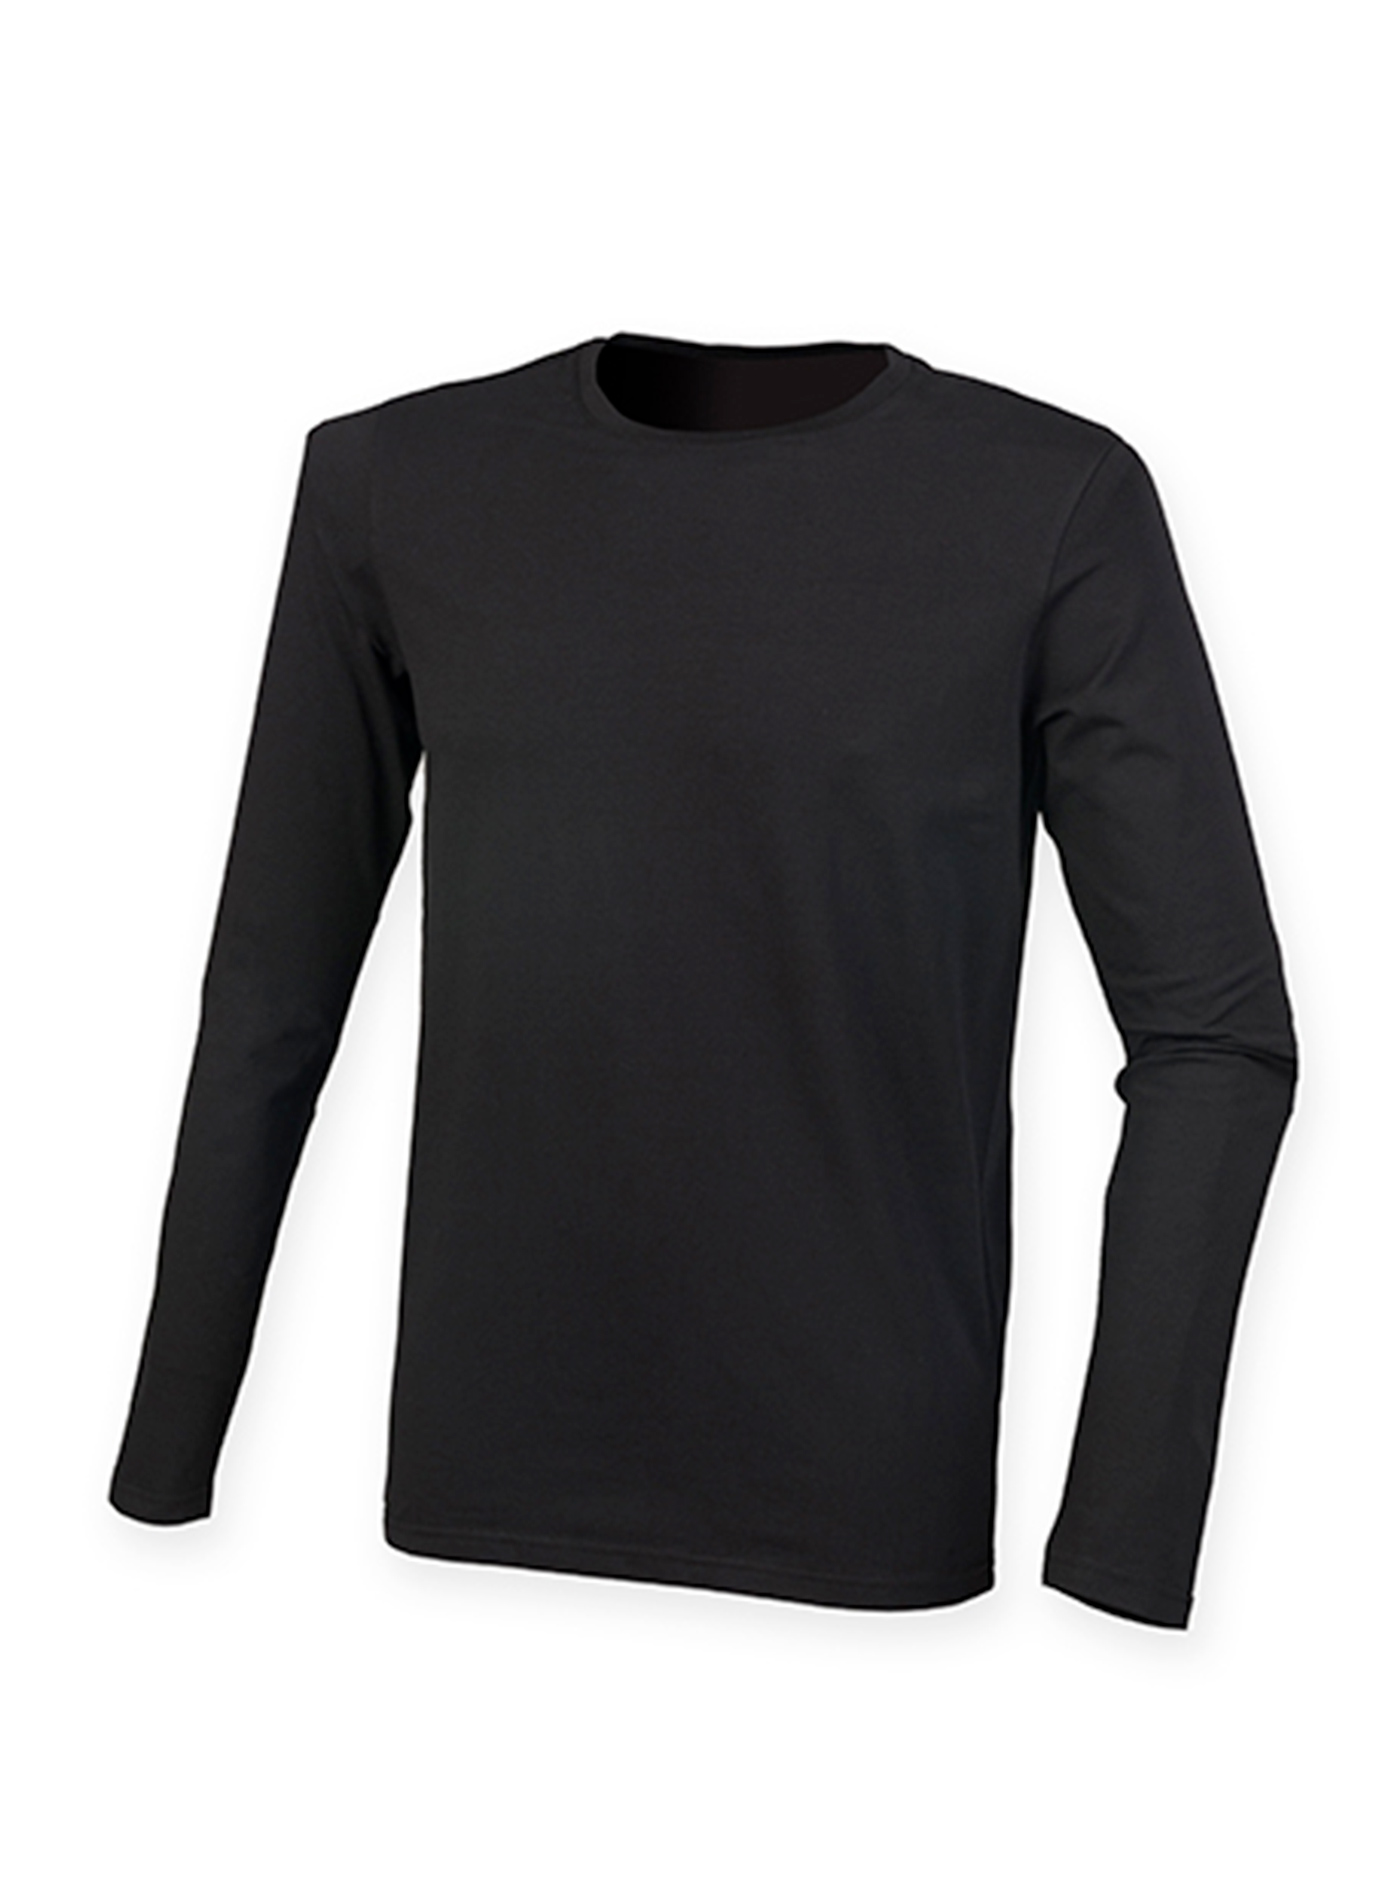 Pánské tričko s dlouhým rukávem Skinnifit Feels Good - černá XL